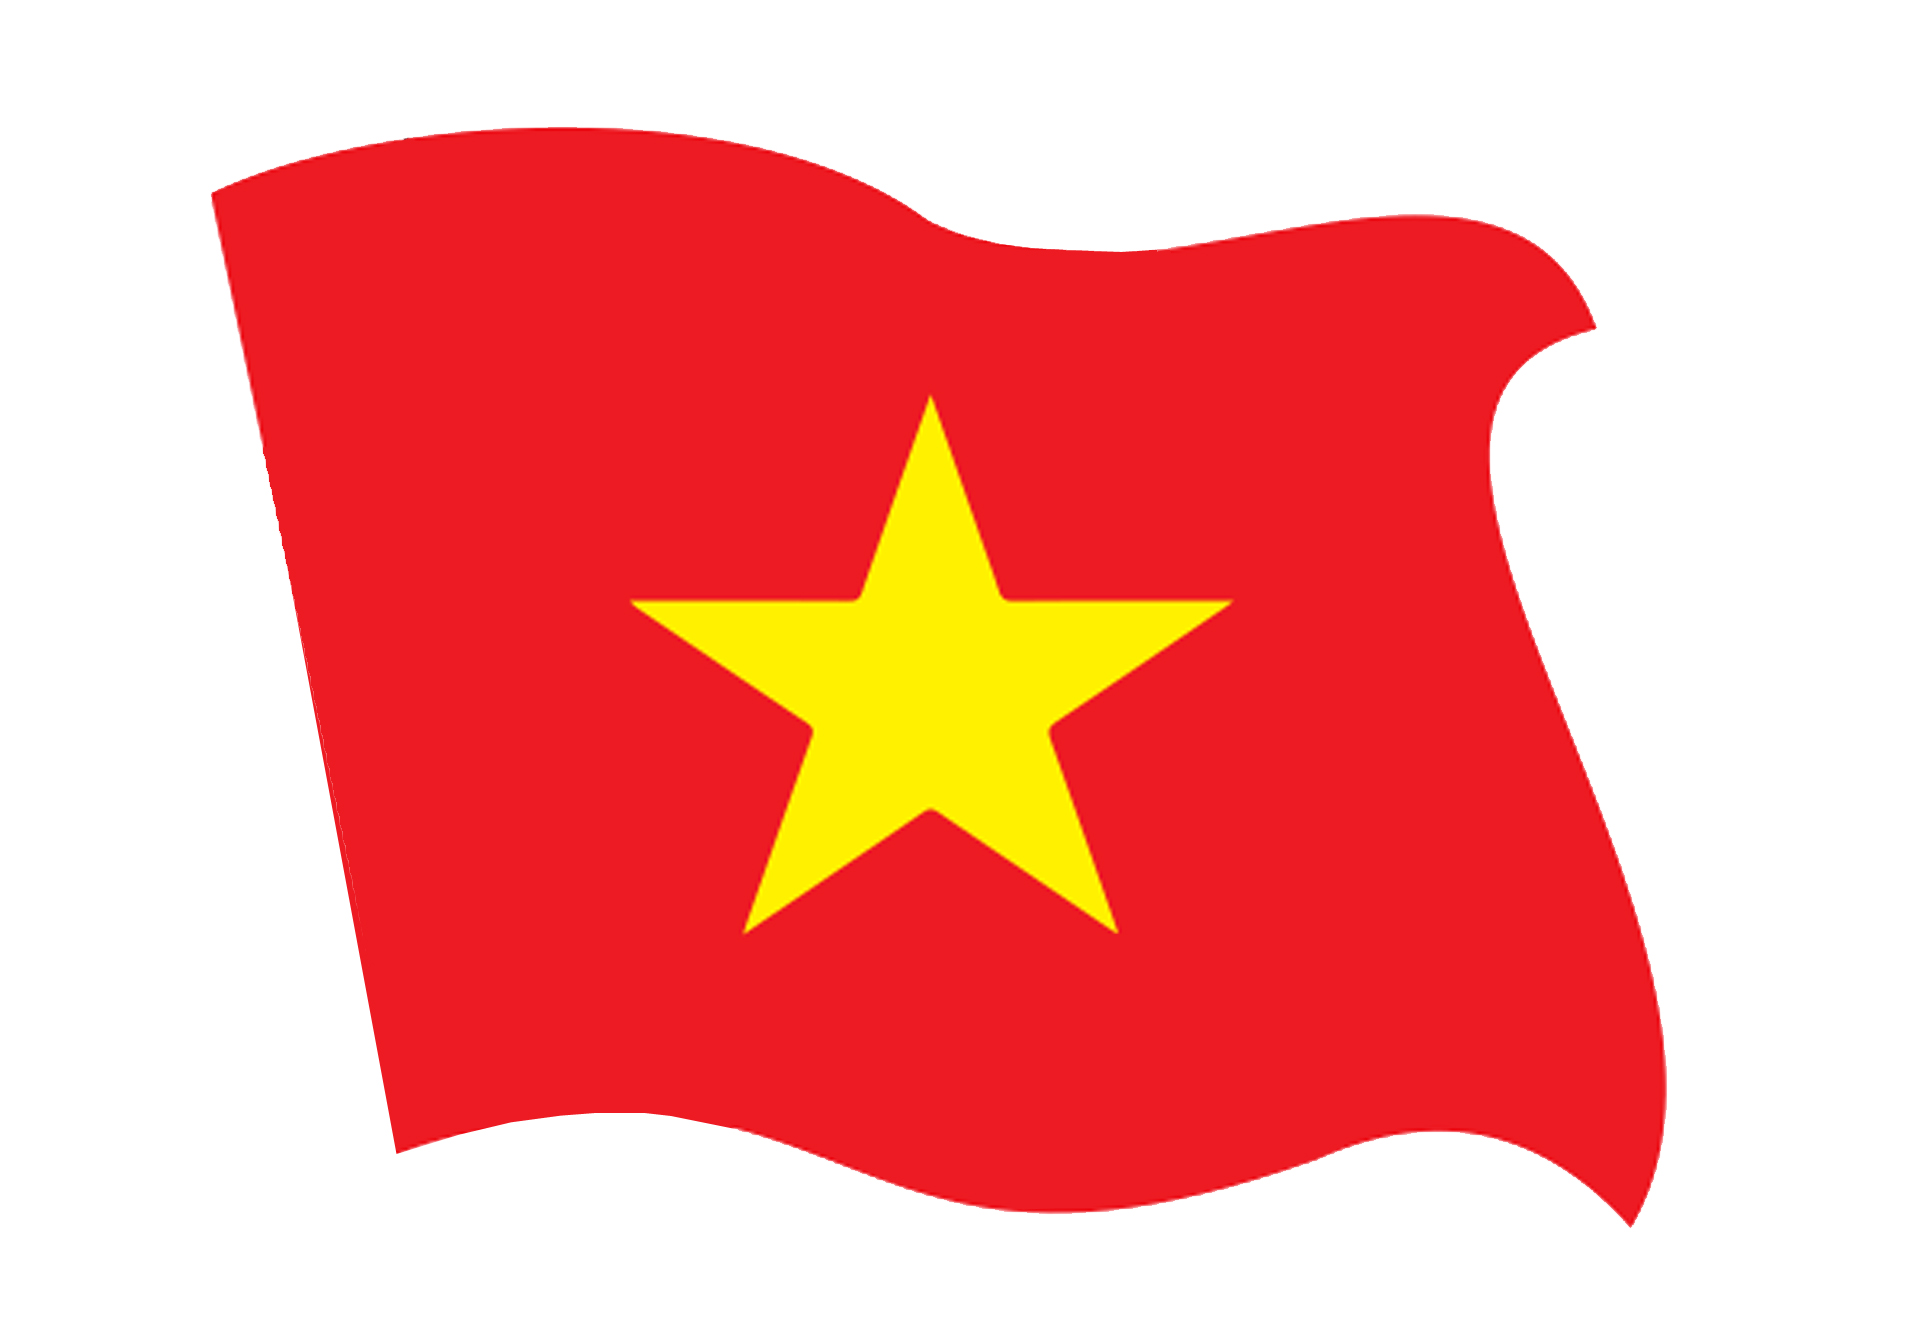 Quốc kỳ Cờ Việt Nam Png là một trong những tùy chọn thông dụng nhất cho các thiết kế trang trí, quảng cáo, hoặc sử dụng cho các tài liệu chính trị. Bạn có thể tìm thấy nhiều mẫu đa dạng về kích thước và hoán vị màu sắc. Không bao giờ là quá muộn để đón xem hình ảnh quốc kỳ Cờ Việt Nam Png đẹp lung linh.